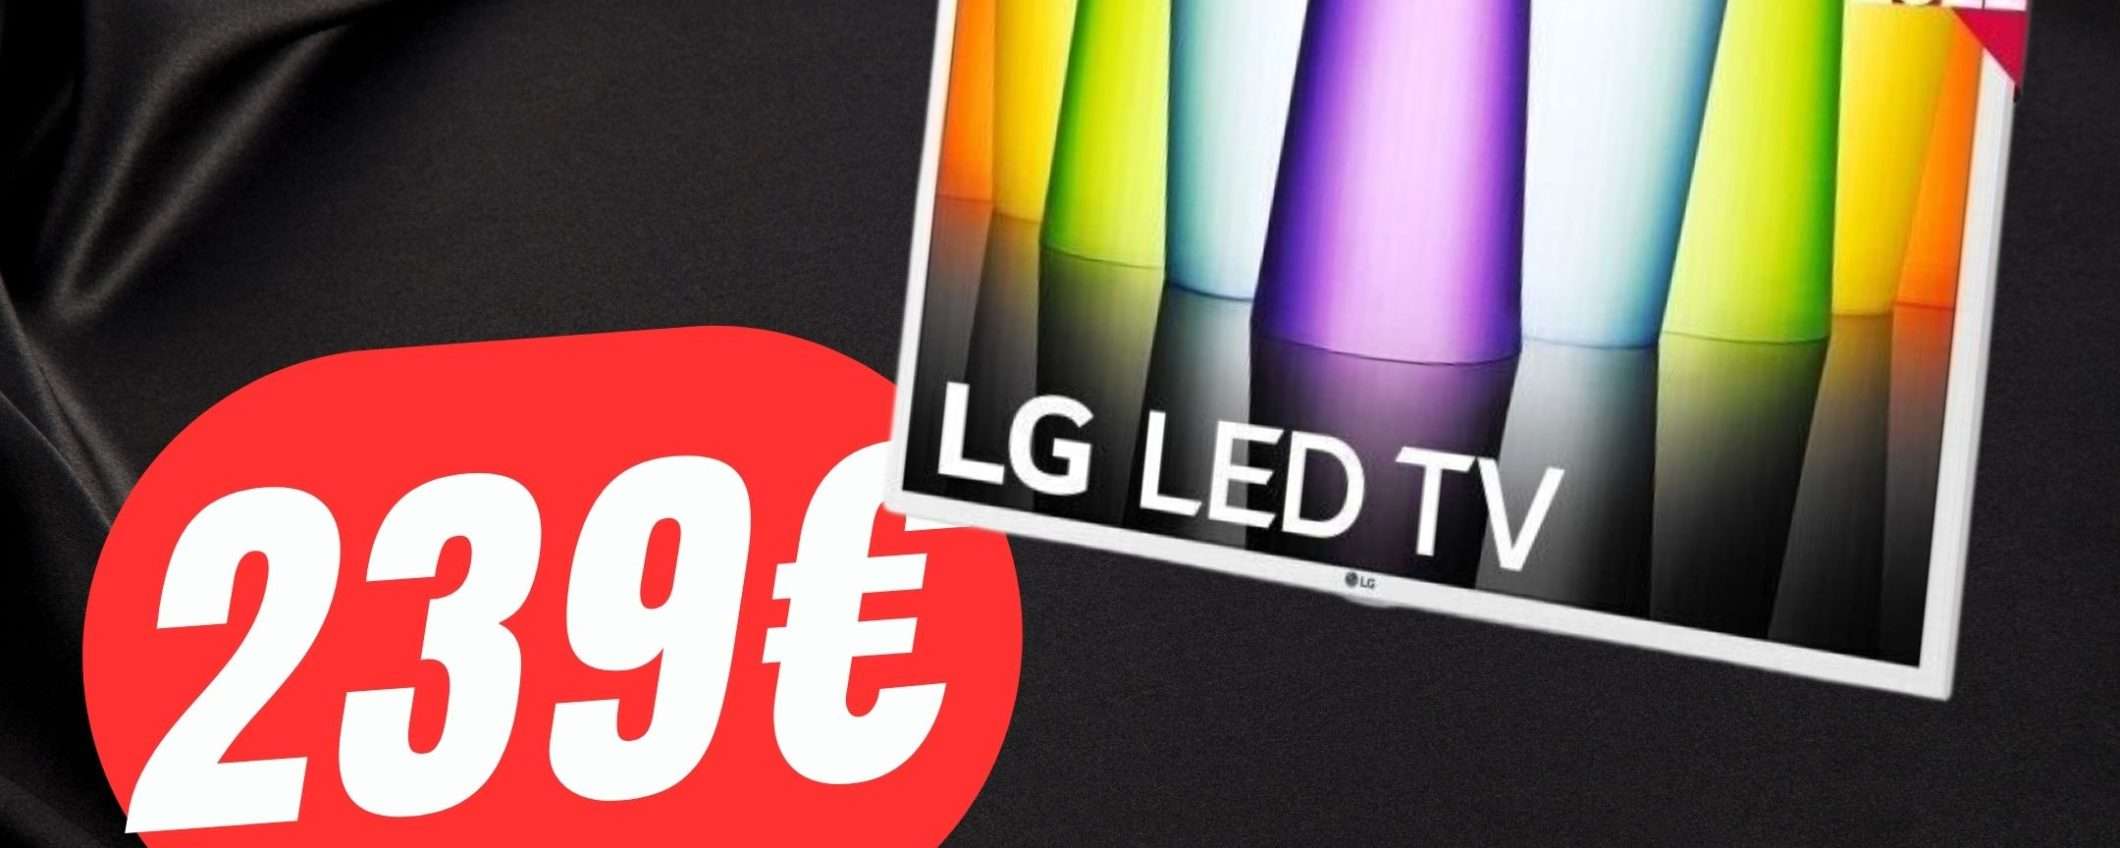 Lo Smart TV di LG costa 239€ grazie a questo COUPON eBay!